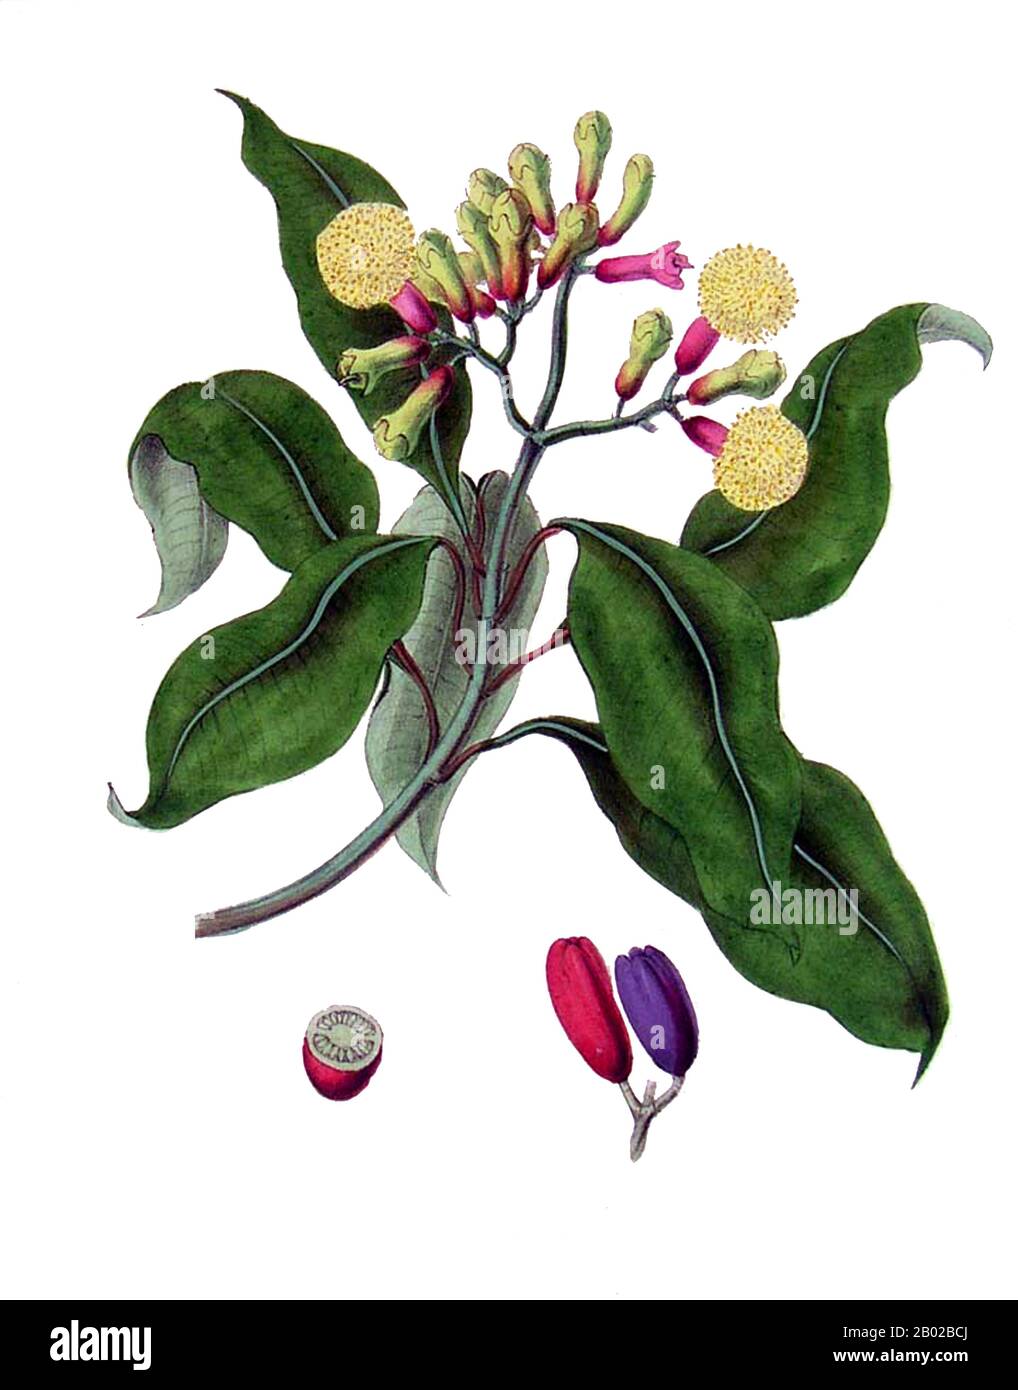 Les clous de girofle (Syzygium aromaticum) sont les bourgeons aromatiques  secs d'un arbre dans la famille des Myrtaceae. Les clous de girofle sont  natifs des îles de Maluku en Indonésie et utilisés